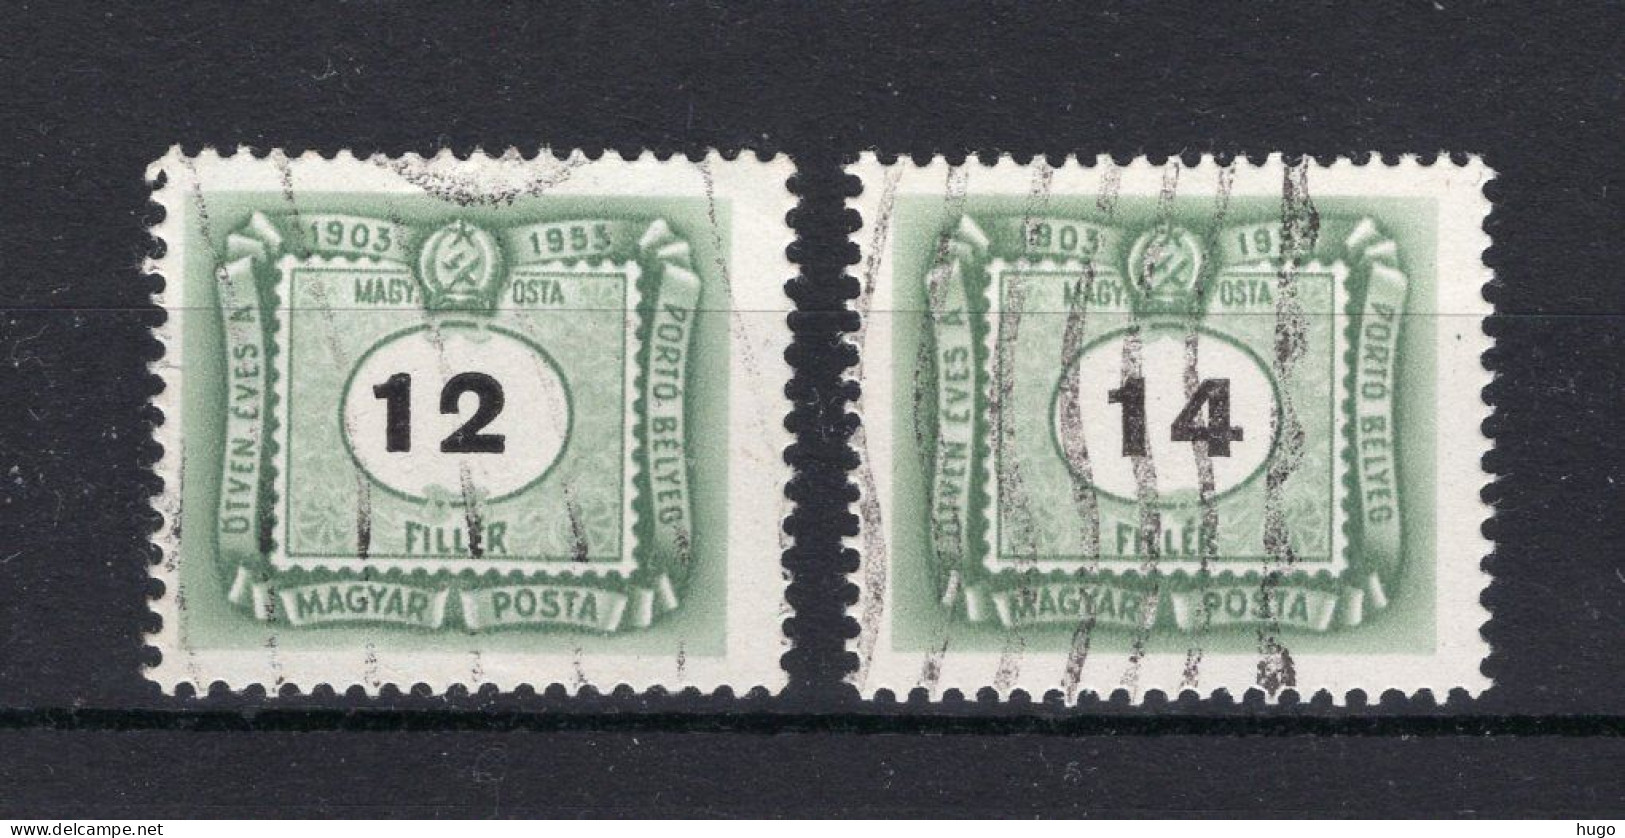 HONGARIJE Yt. T201/202° Gestempeld Portzegels 1953 - Strafport